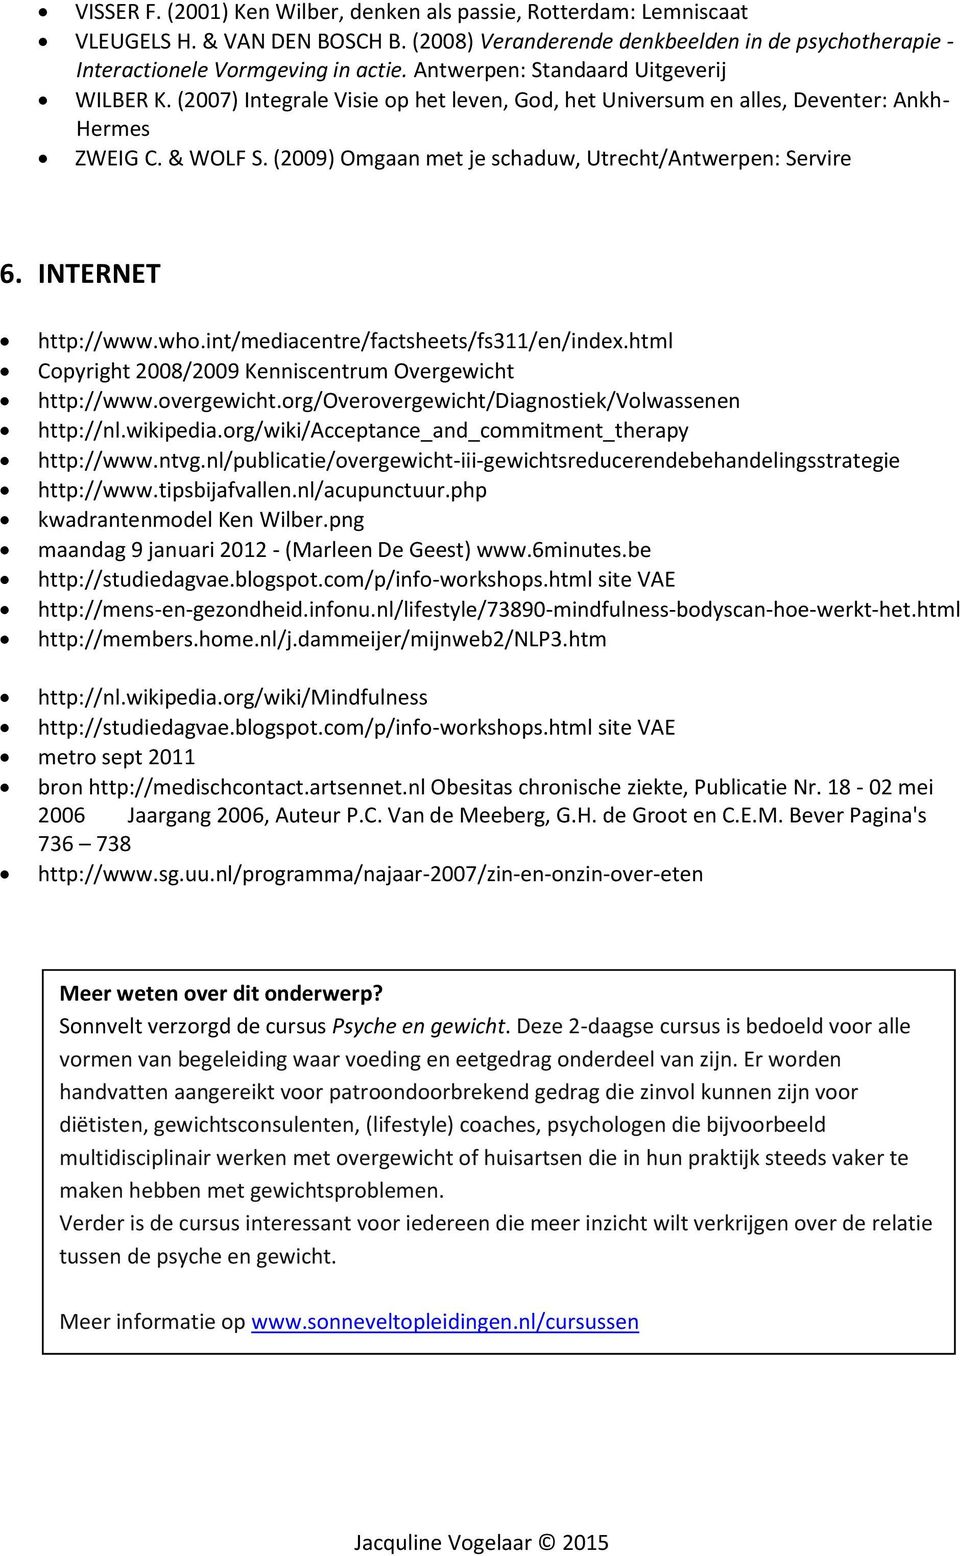 (2009) Omgaan met je schaduw, Utrecht/Antwerpen: Servire 6. INTERNET http://www.who.int/mediacentre/factsheets/fs311/en/index.html Copyright 2008/2009 Kenniscentrum Overgewicht http://www.overgewicht.